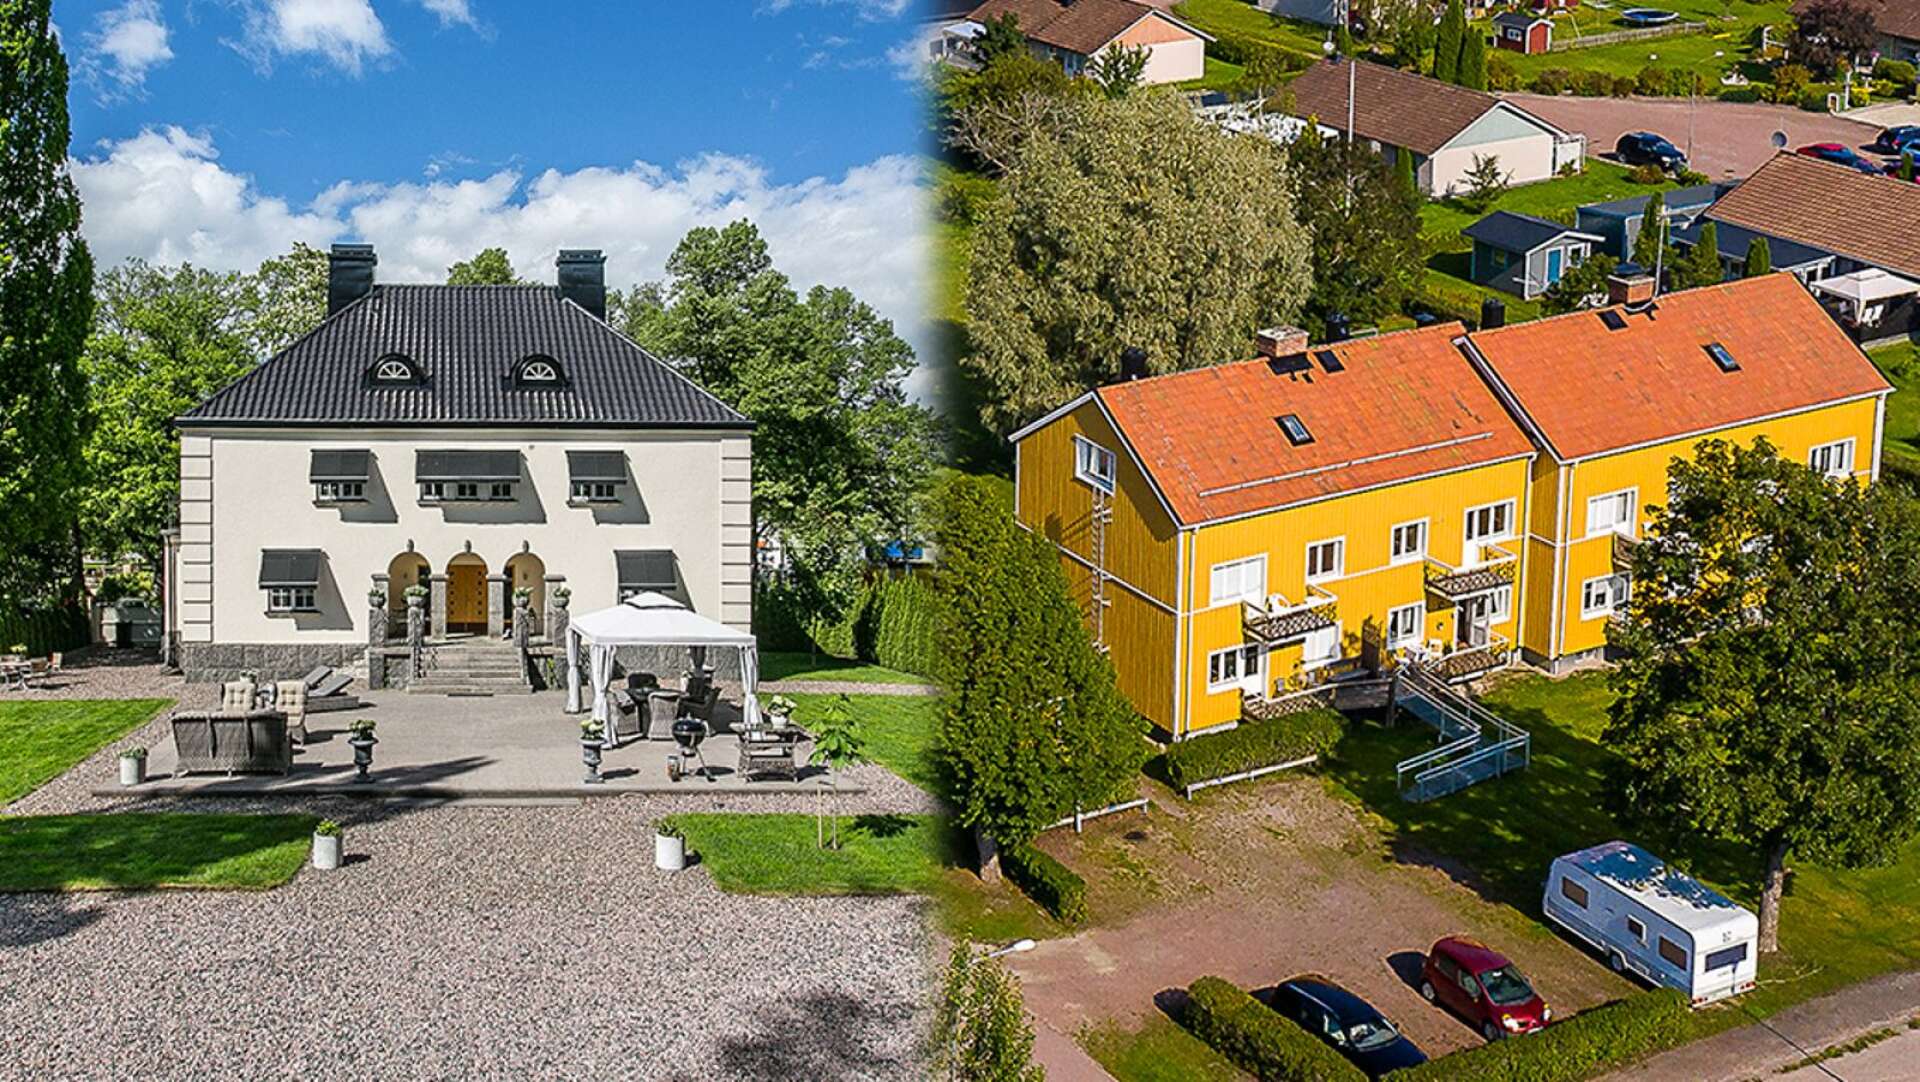 Några av objekten i länet som säljs för över tio miljoner kronor är grosshandlarvillan på Sandgrund i Karlstad och sju bostadsfastigheter i Segmon med totalt 39 lägenheter.